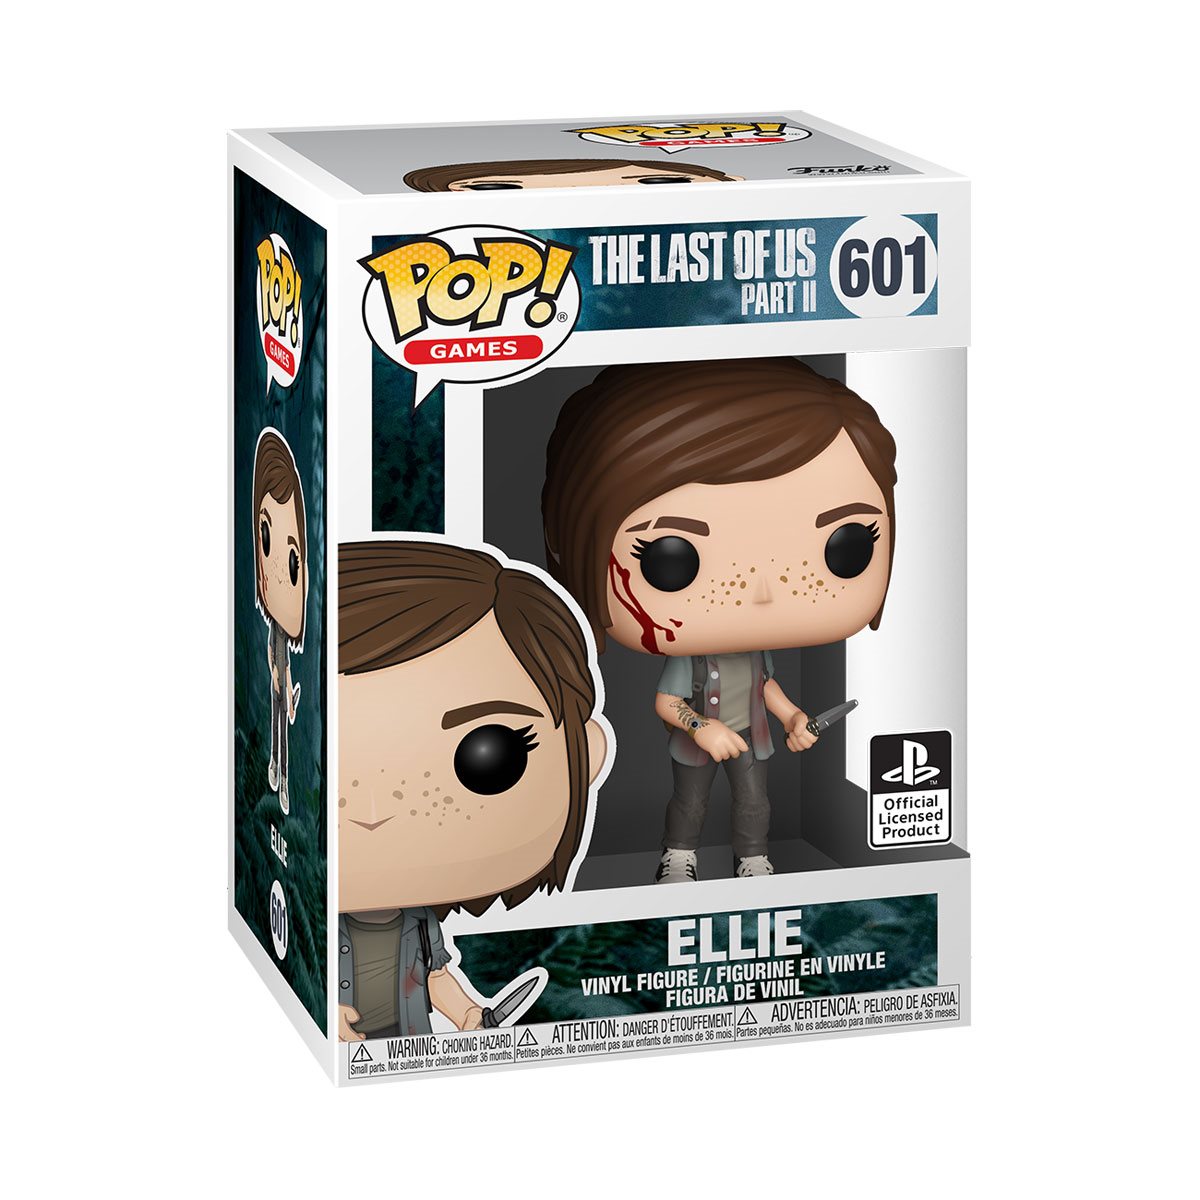 Last of Us Part II Ellie Pop! Vinyl Figure